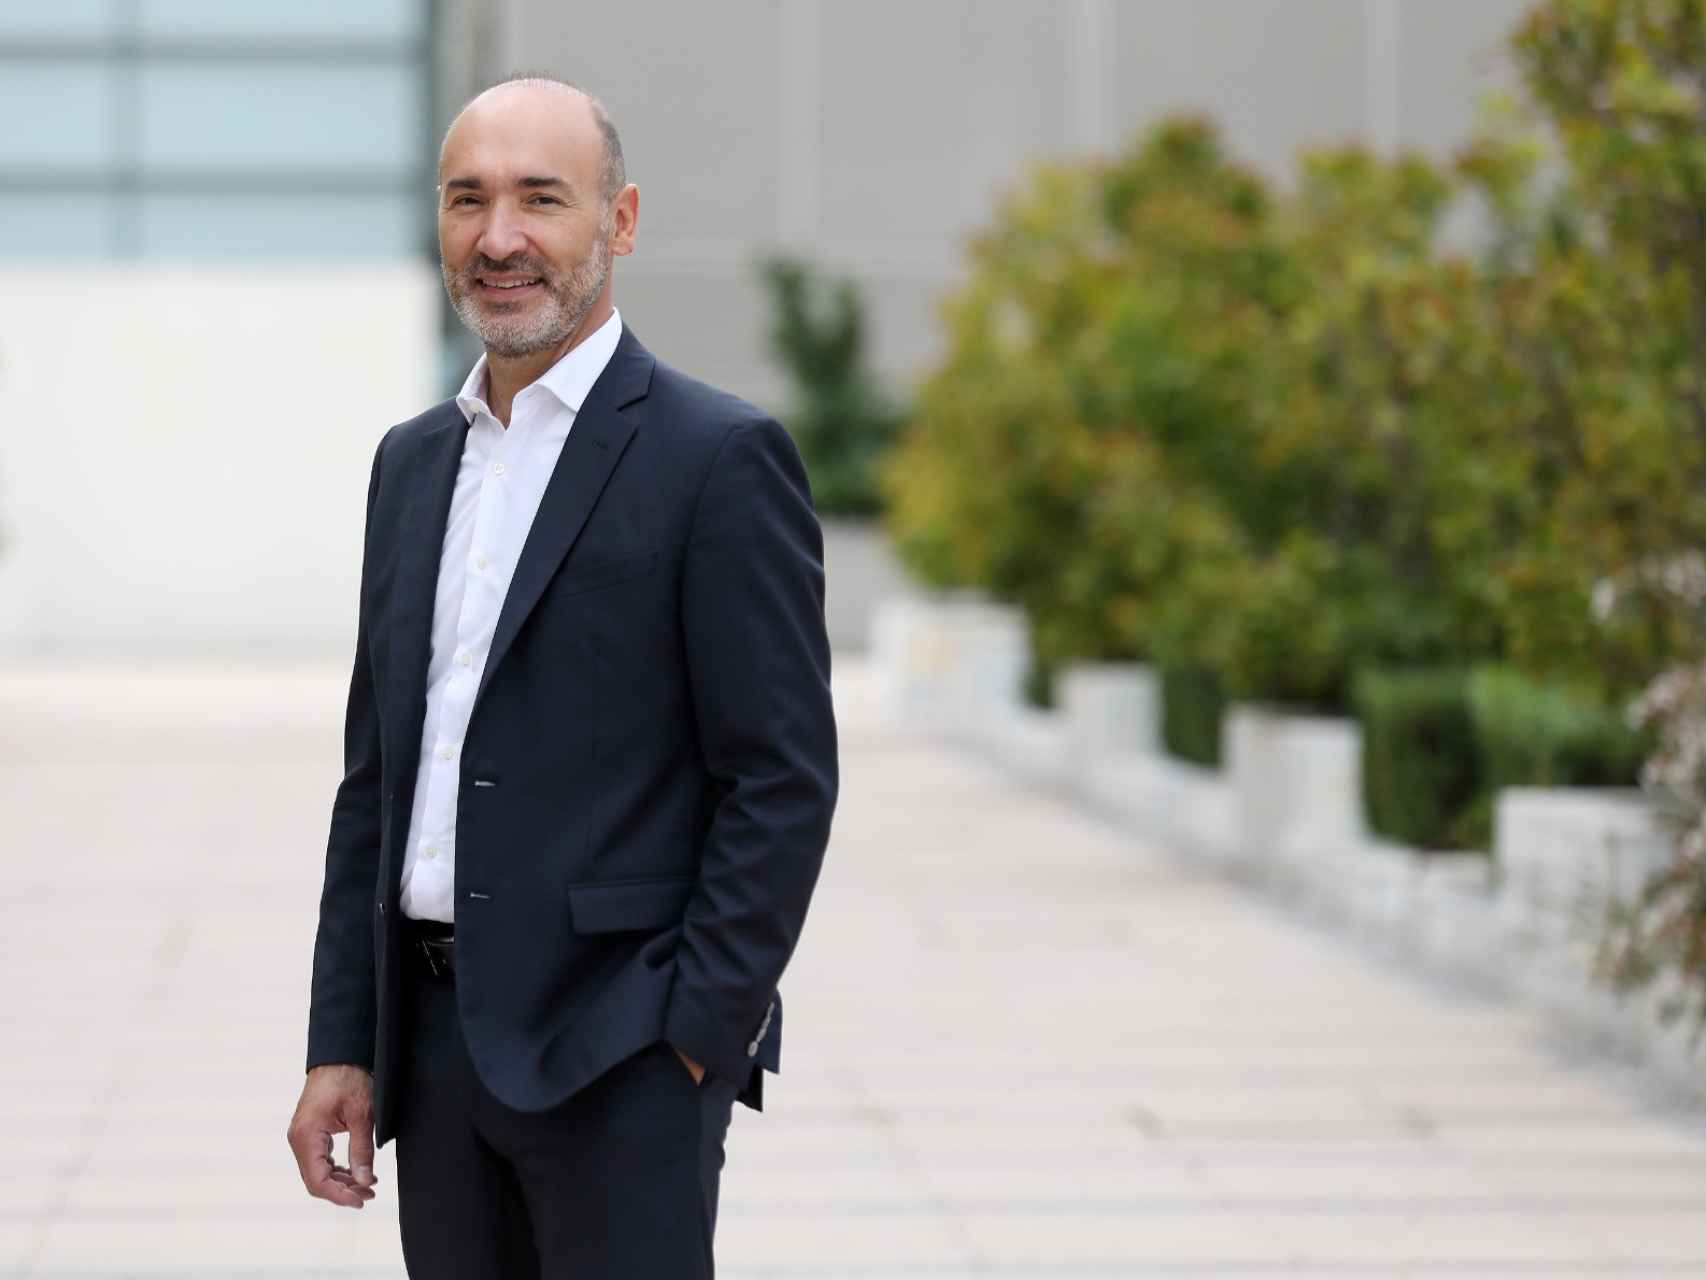 Francesc Noguera, CEO de doValue en España